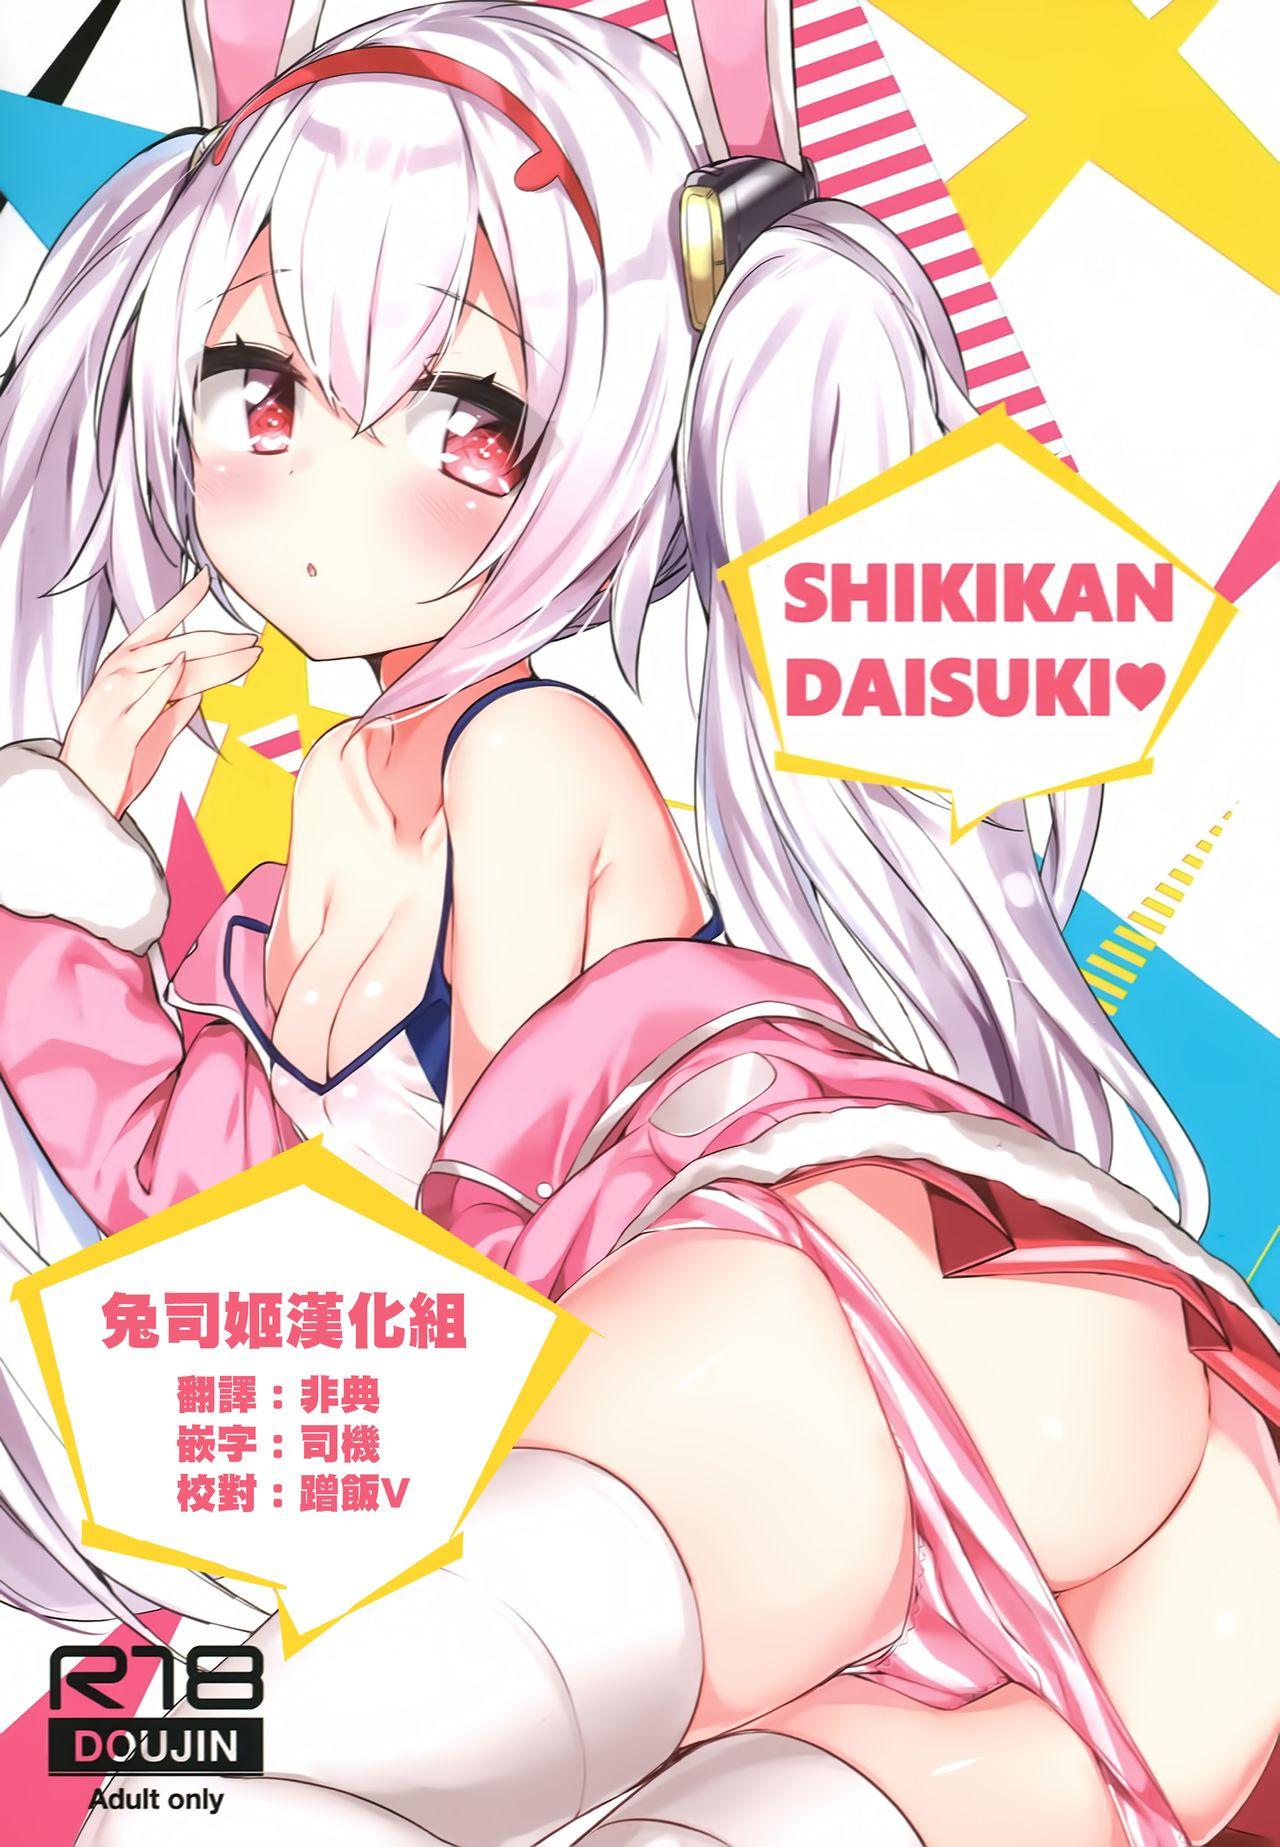 Perfect Body SHIKIKAN DAISUKI - Azur lane Pussy To Mouth - Page 1